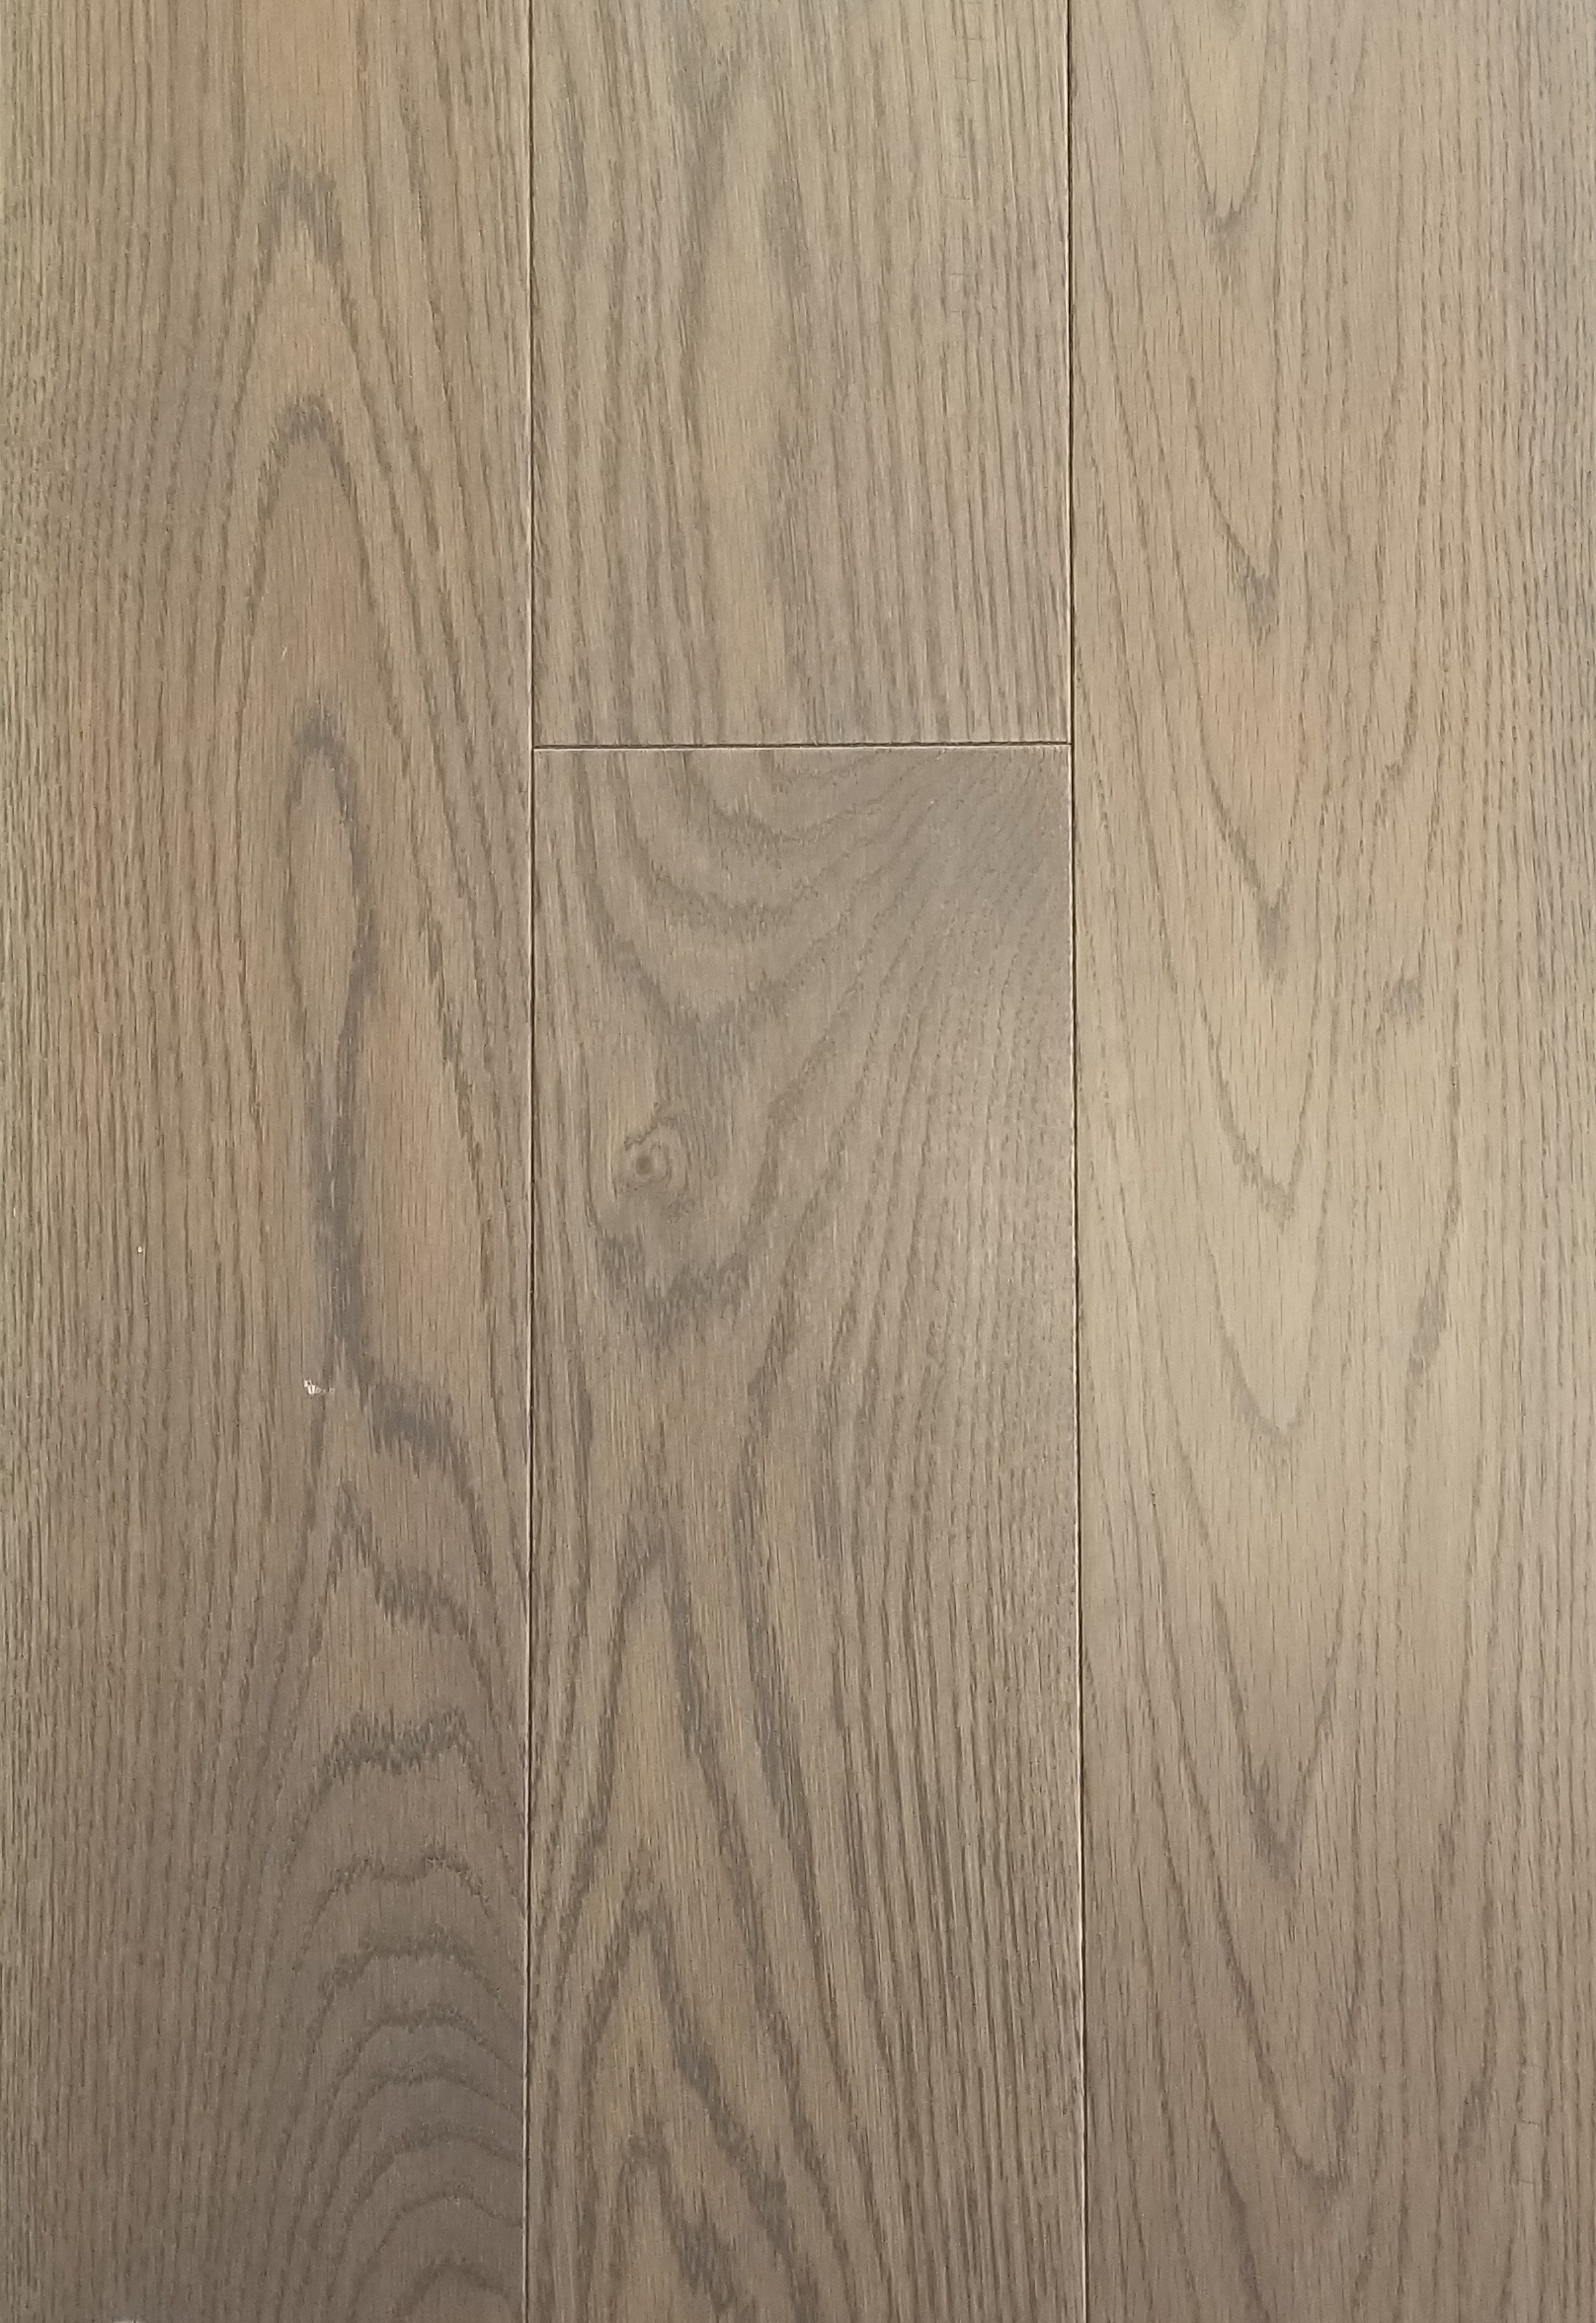 Hardwood Flooring Engineered, Solid Hardwood Flooring Colors